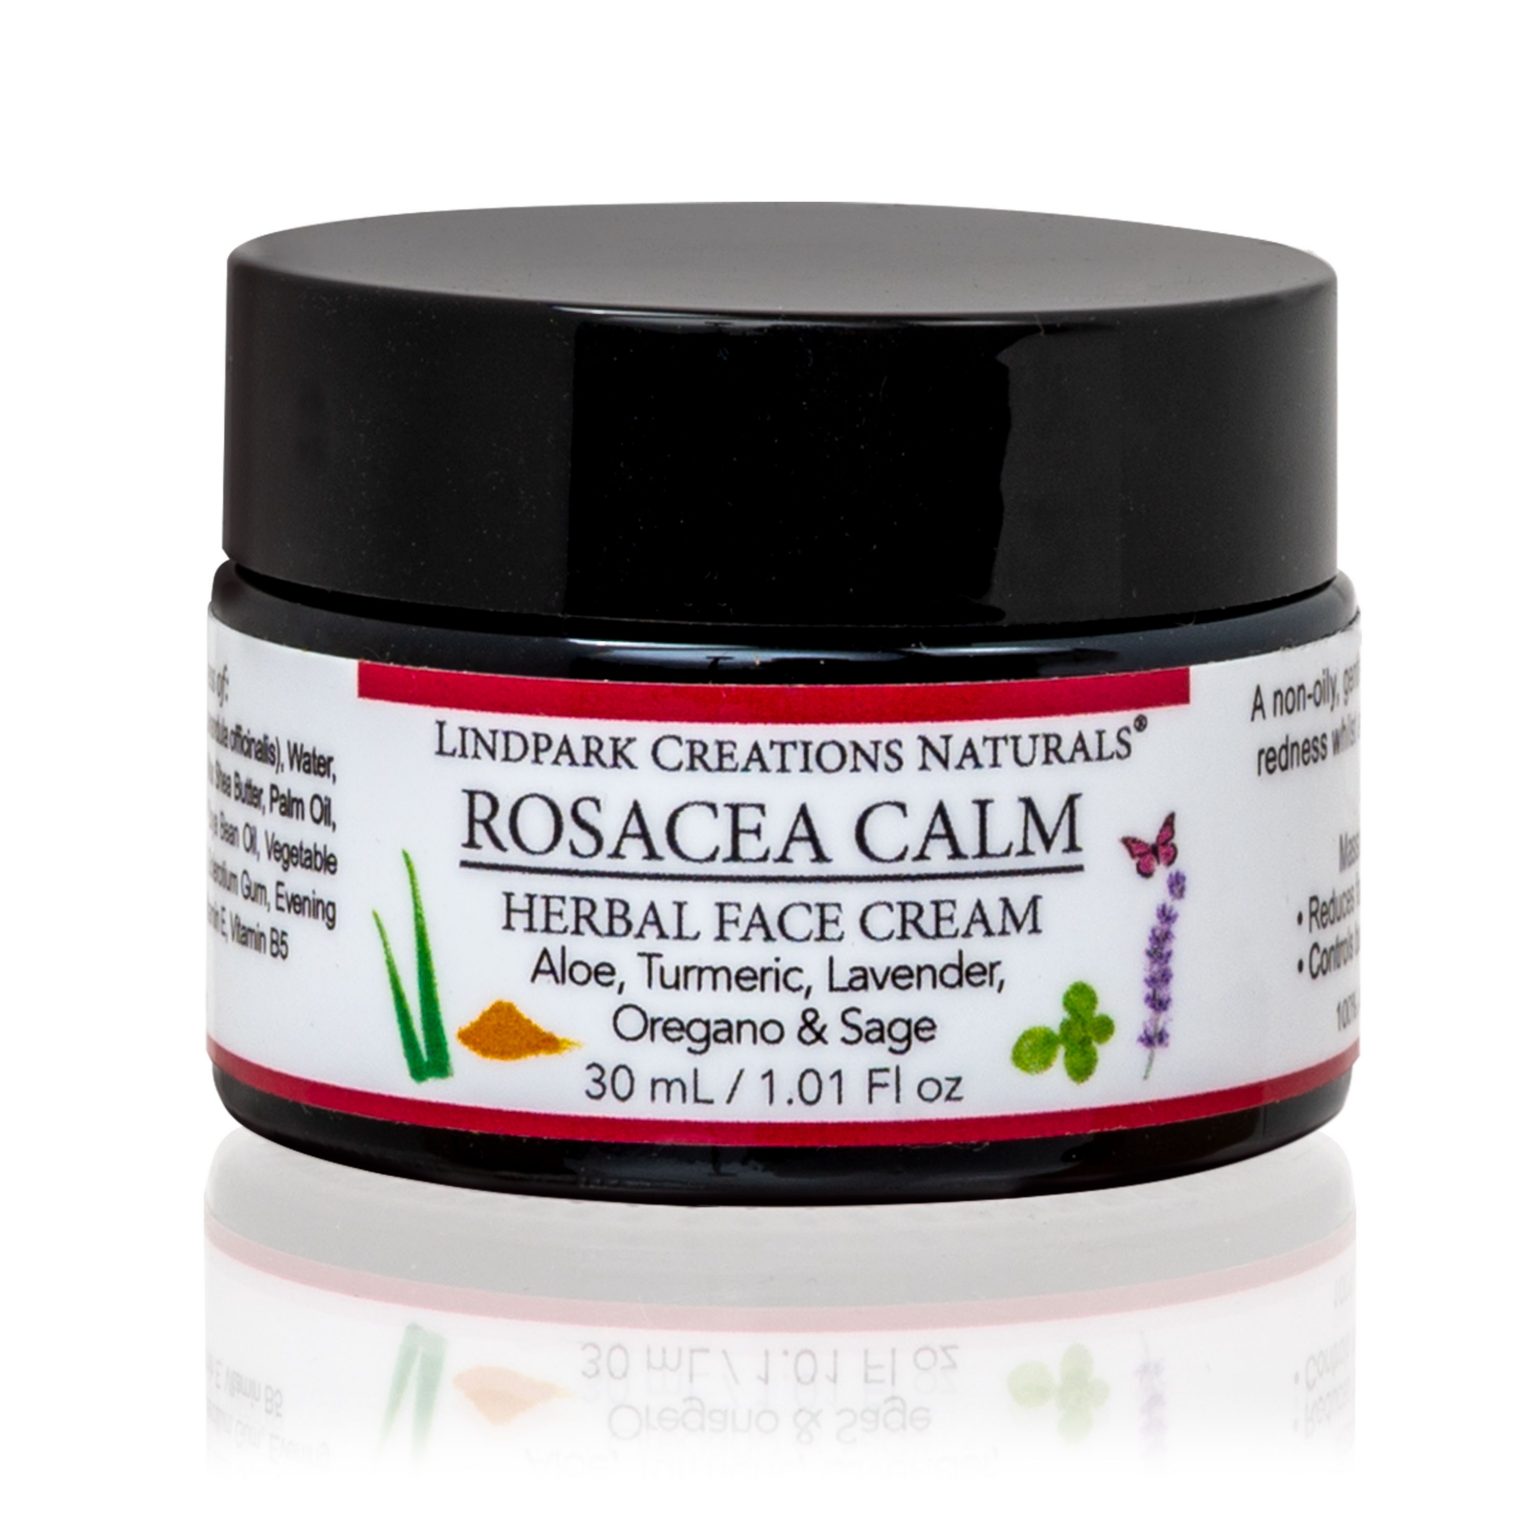 Facial cream to help rosacea